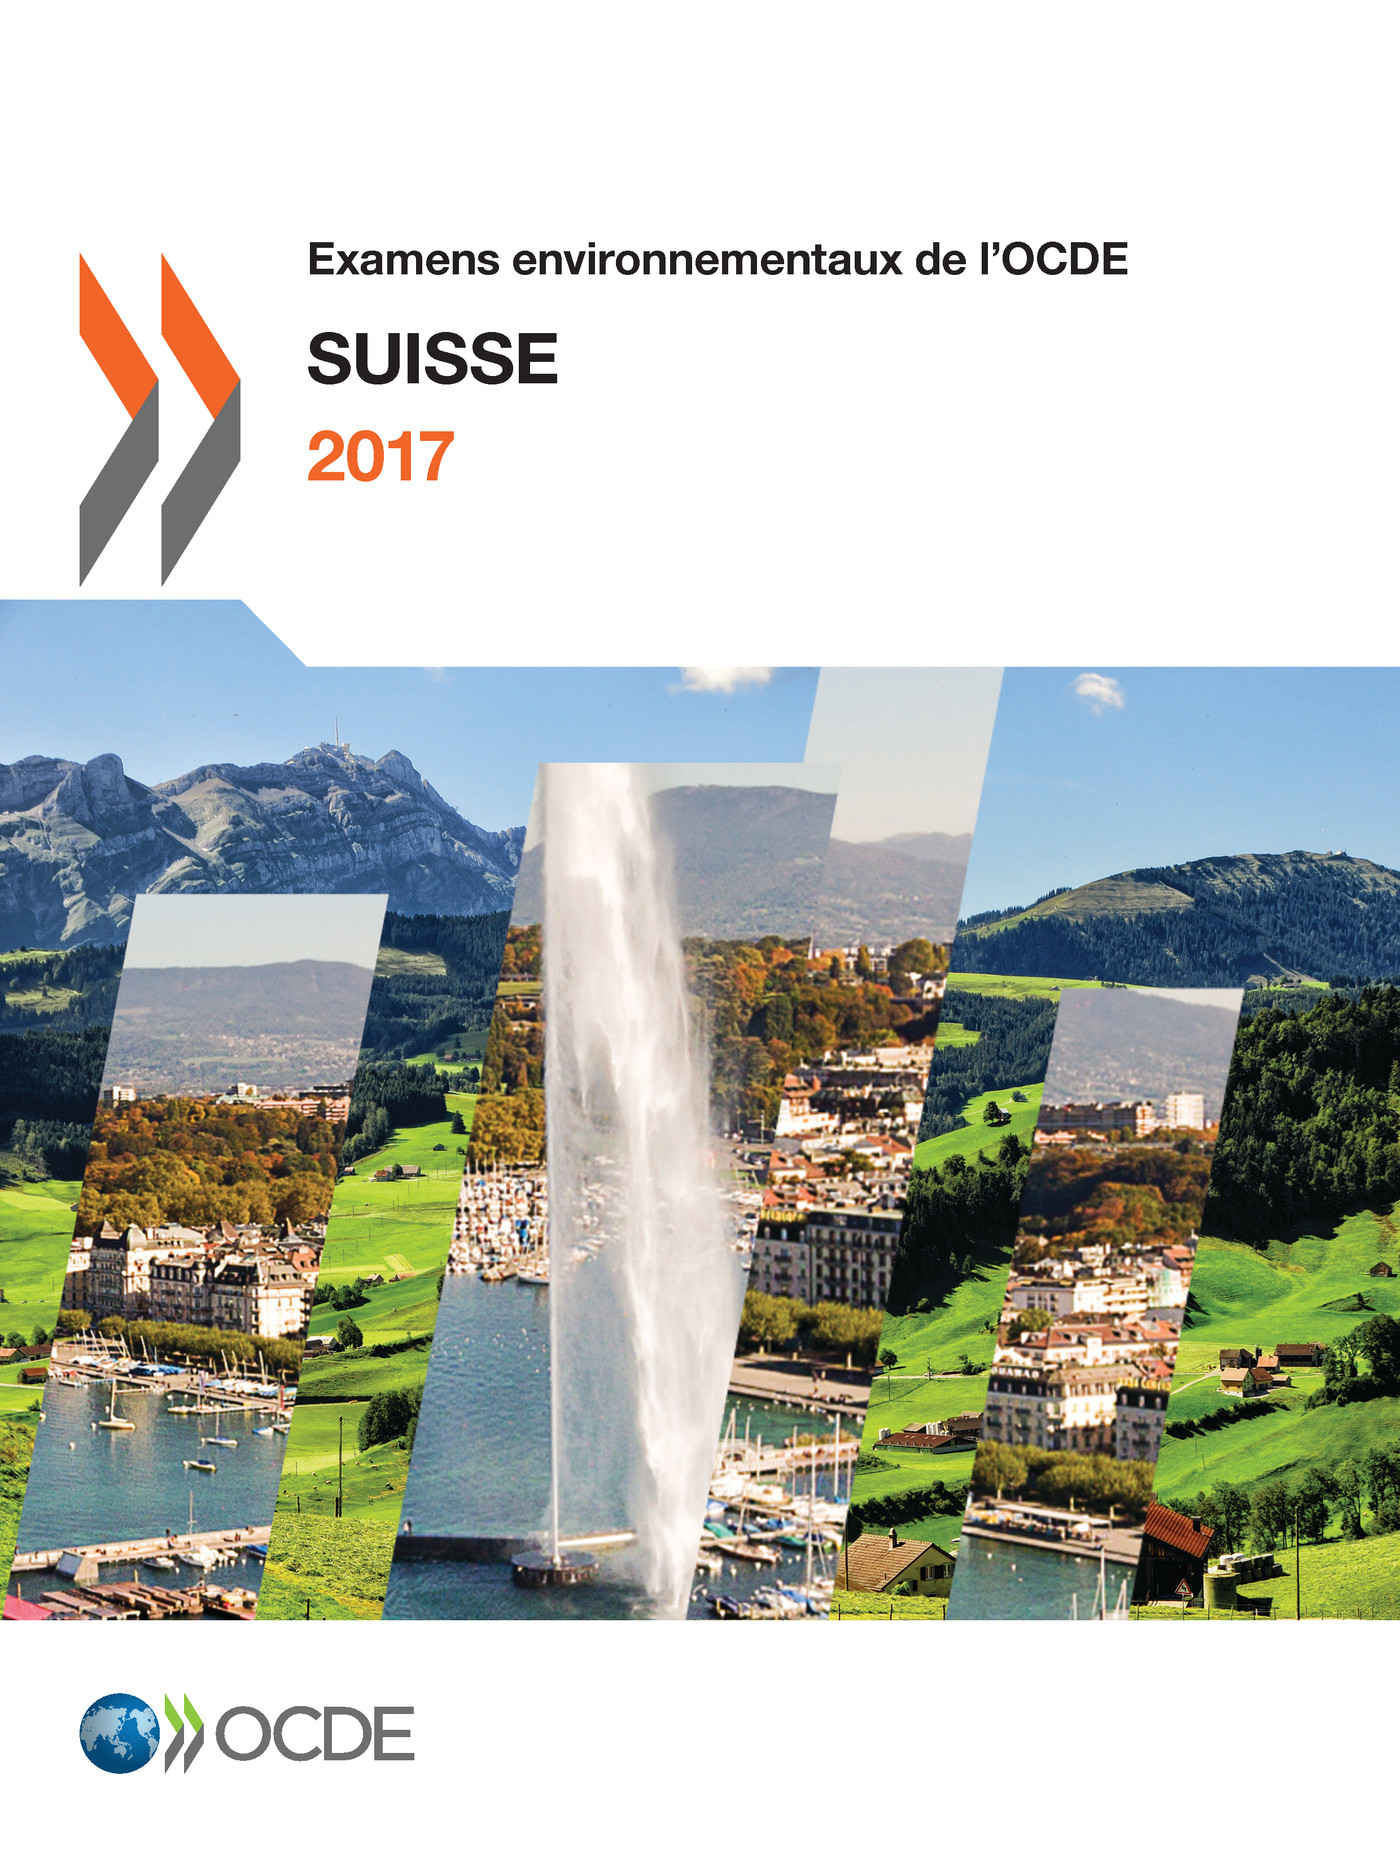 Examens environnementaux de l'OCDE: Suisse 2017 -  Collectif - OCDE / OECD